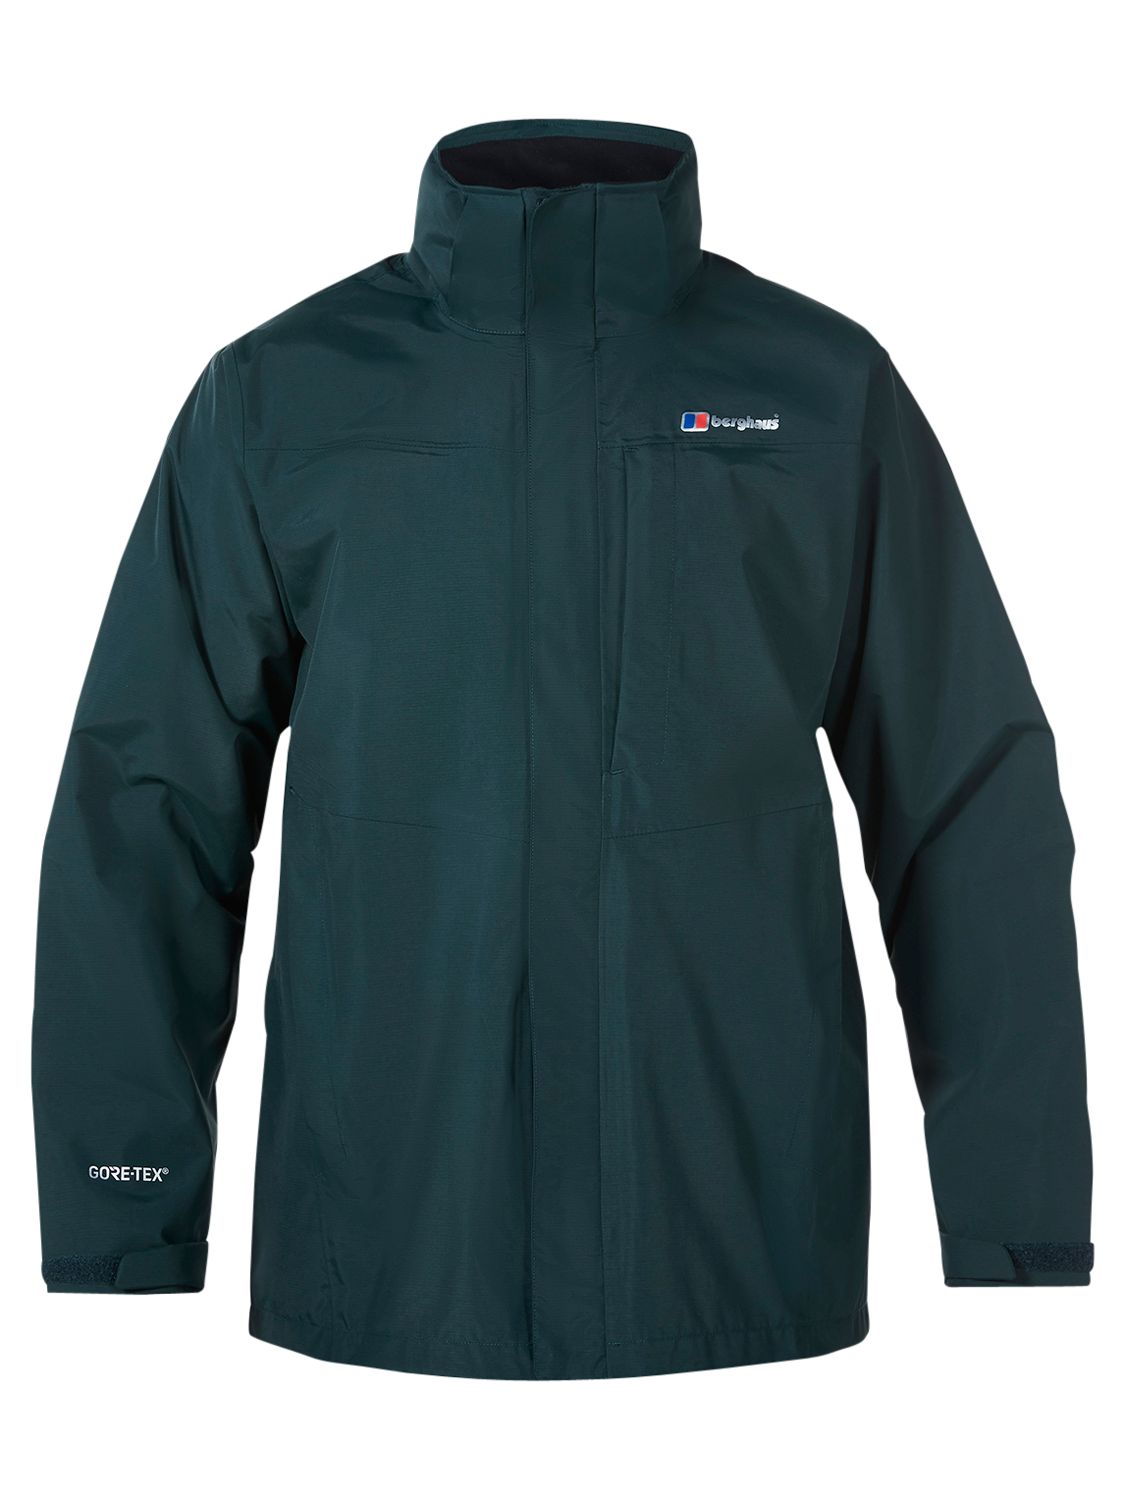 Berghaus Hillwalker Waterproof Men's Jacket, Green, XL